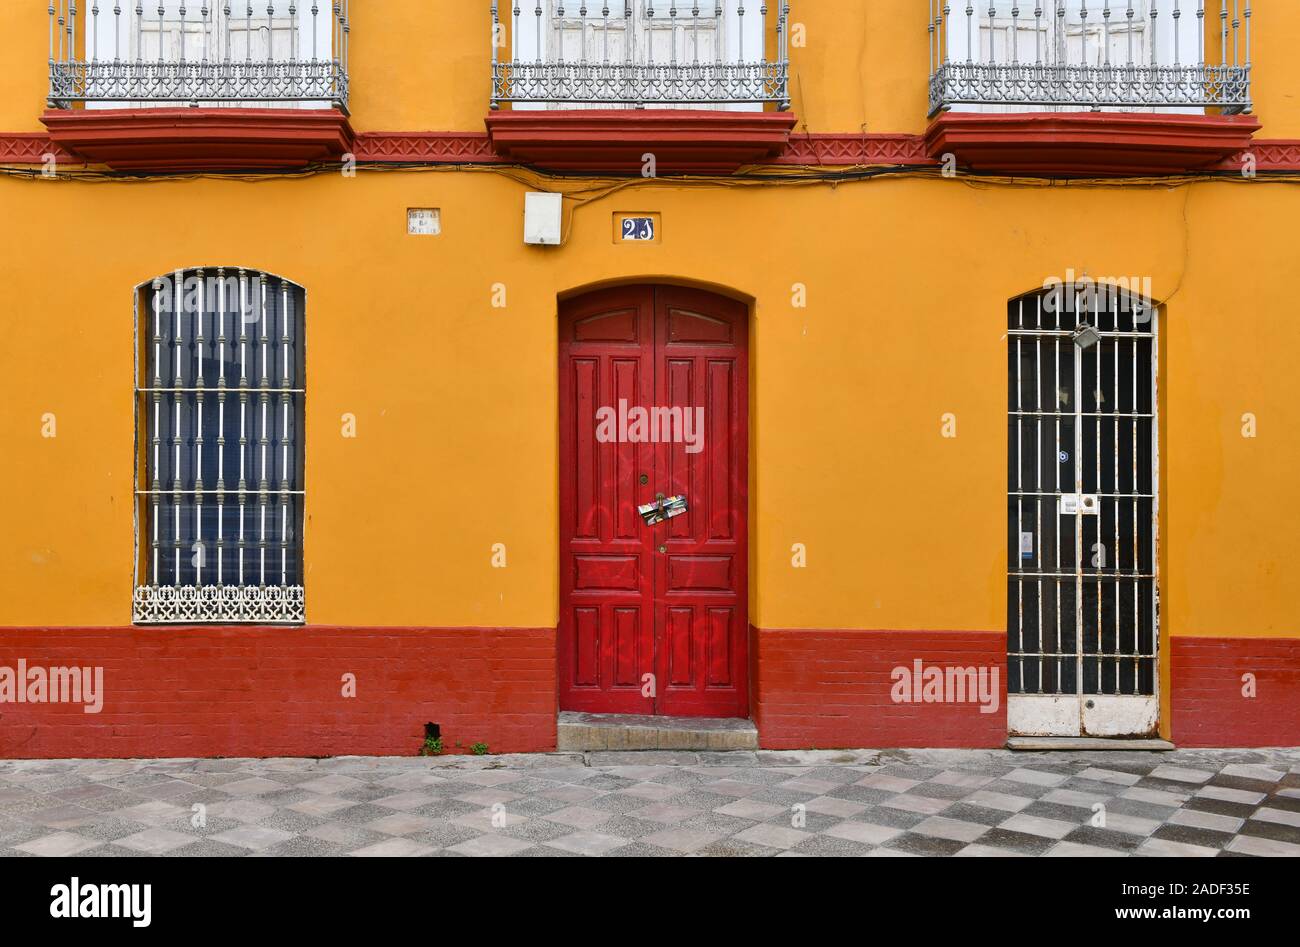 Siviglia, Spagna - 28 nov,2019: edificio colorato esterno nel Barrio Santa Cruz di Siviglia, Spagna. Gli edifici colorati nel quartiere ebraico di Siviglia Foto Stock